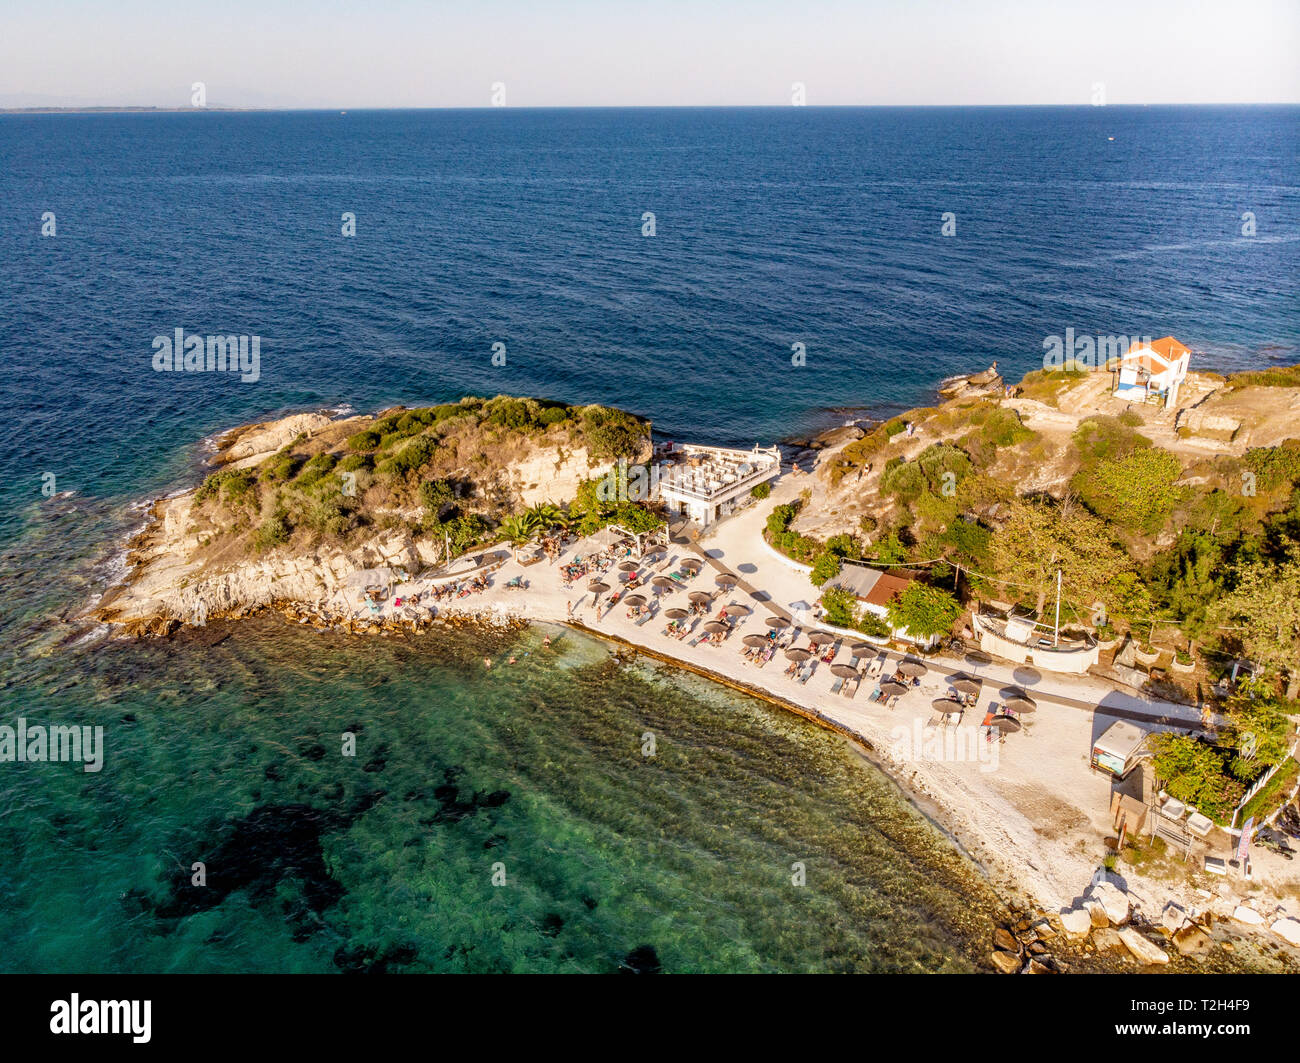 La playa y el bar de la playa en la isla de Thasos, Grecia, vista aérea Foto de stock